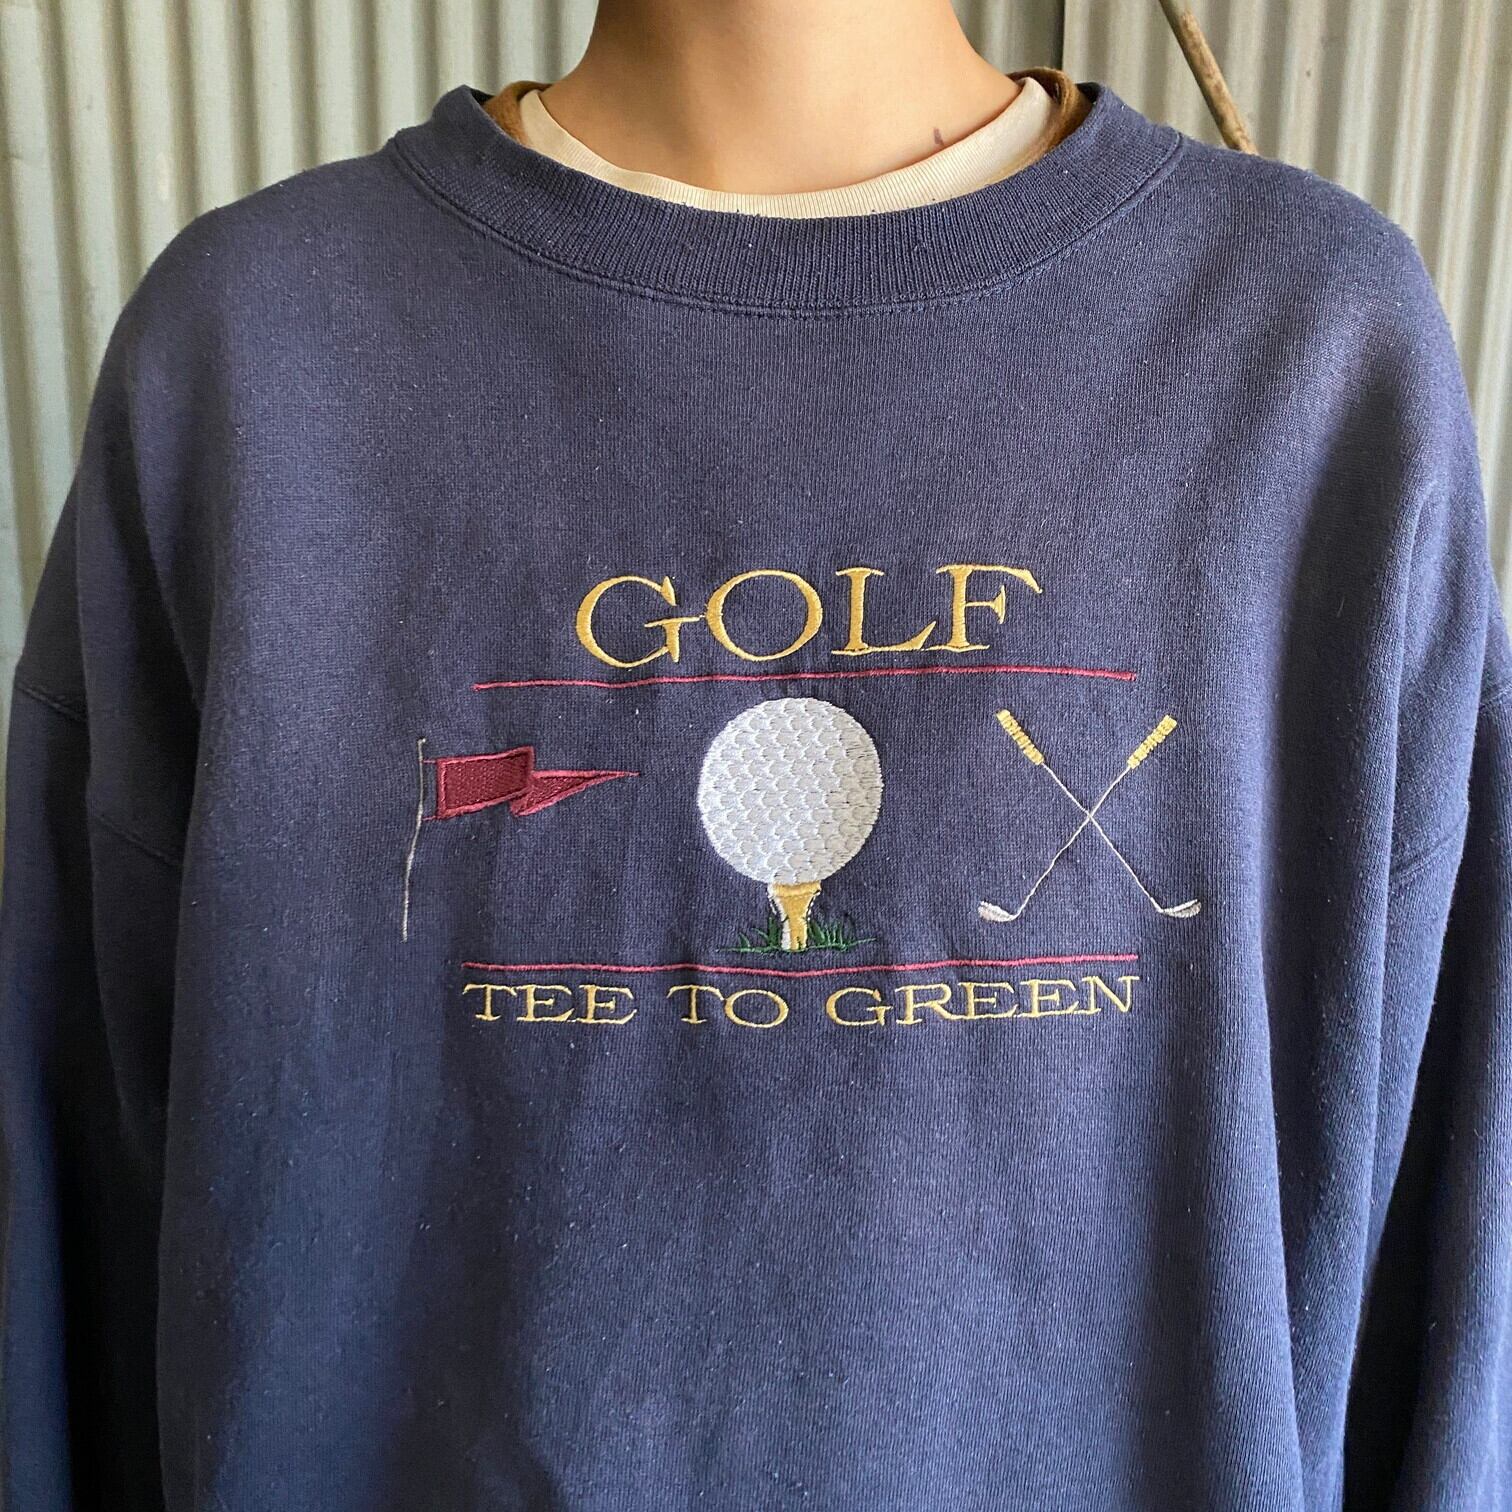 ビンテージデザインスウェット 90s GOLF ネイビー 刺繍 ゴルフ